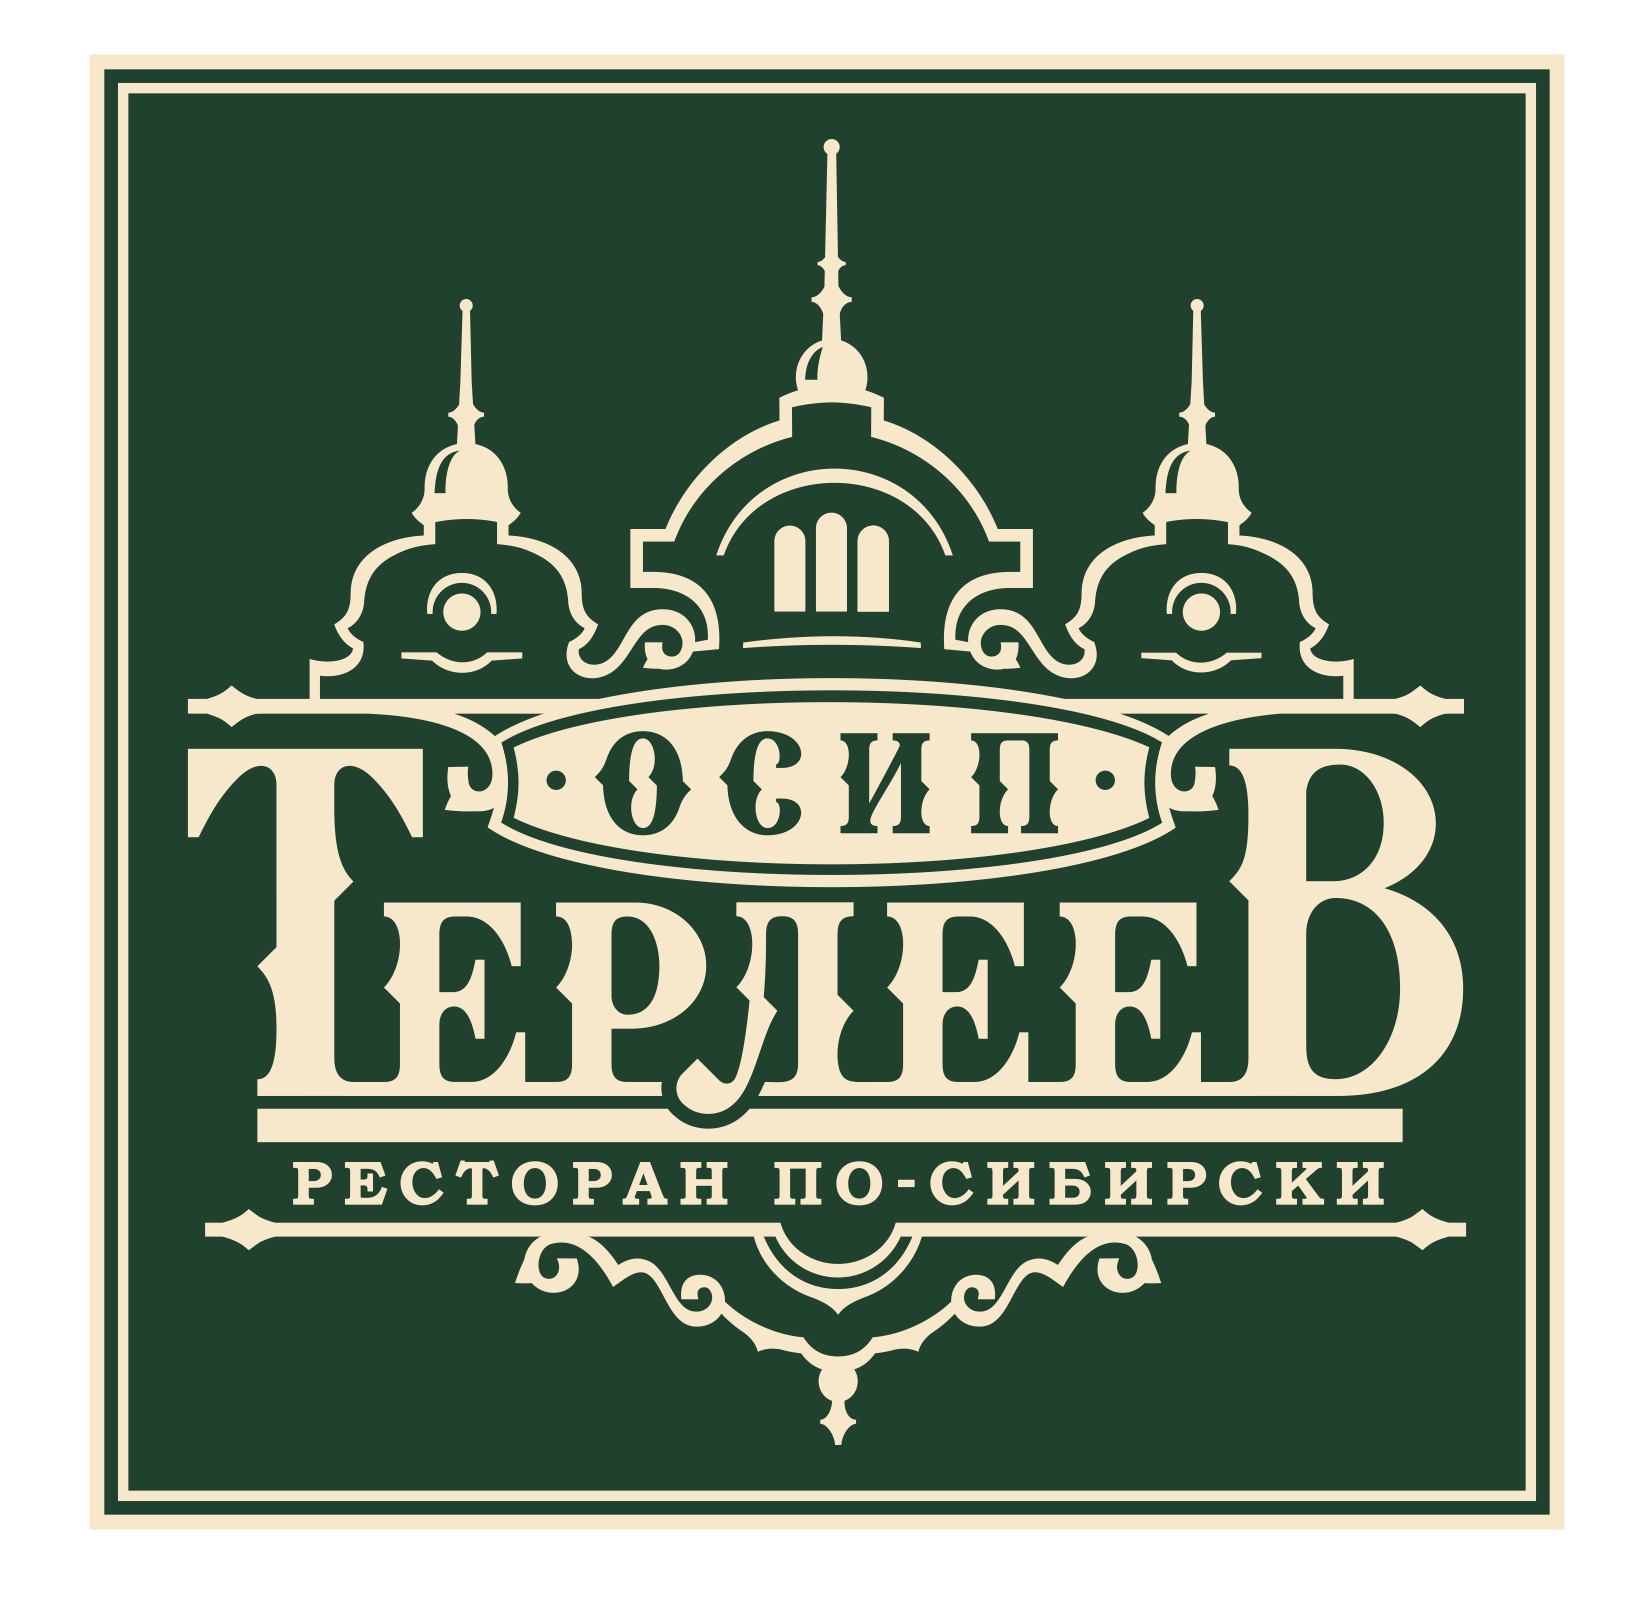 Ресторан Осип Терлеев